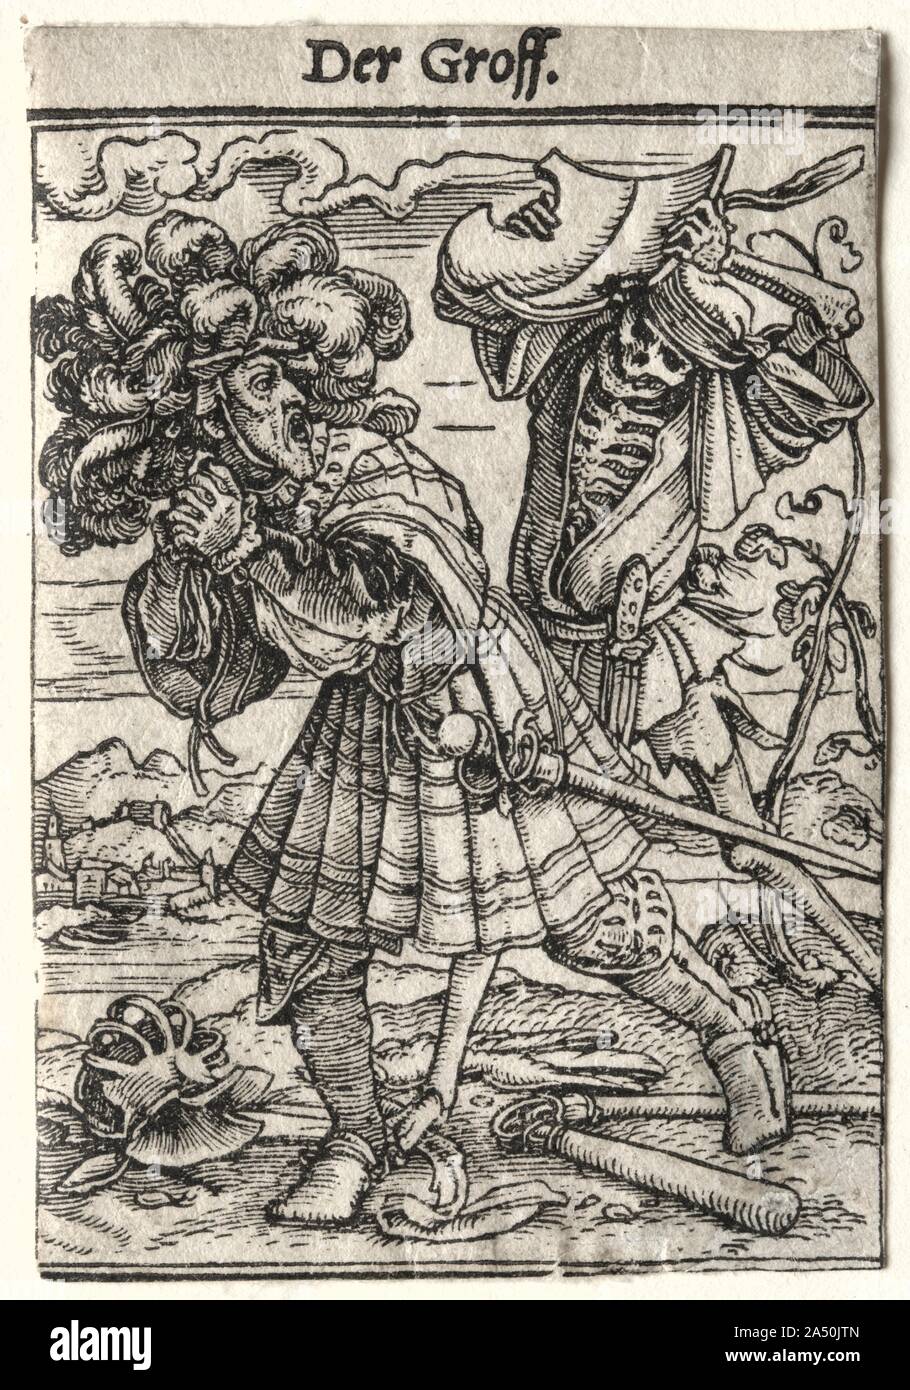 La danse de mort : le Comte, ch. 1526. Danse de mort est la plus célèbre série de gravures sur bois conçu par Holbein. La quarante-et-un blocs ont été coupées par Hans L&# xfc;tzelburger dans les années immédiatement avant sa mort en 1526, bien que l'ensemble n'a été publié qu'à 1538. Danse de mort est issue d'un drame au milieu du 14ème siècle. À la suite des épidémies comme la peste noire, ces parties ont eu lieu dans un cimetière ou cimetière. Les acteurs, vêtus de costumes pâles peintes pour ressembler à des squelettes, la mort personnifiée et a convoqué un groupe de gens de toutes les classes sociales dans un dancelike pr Banque D'Images